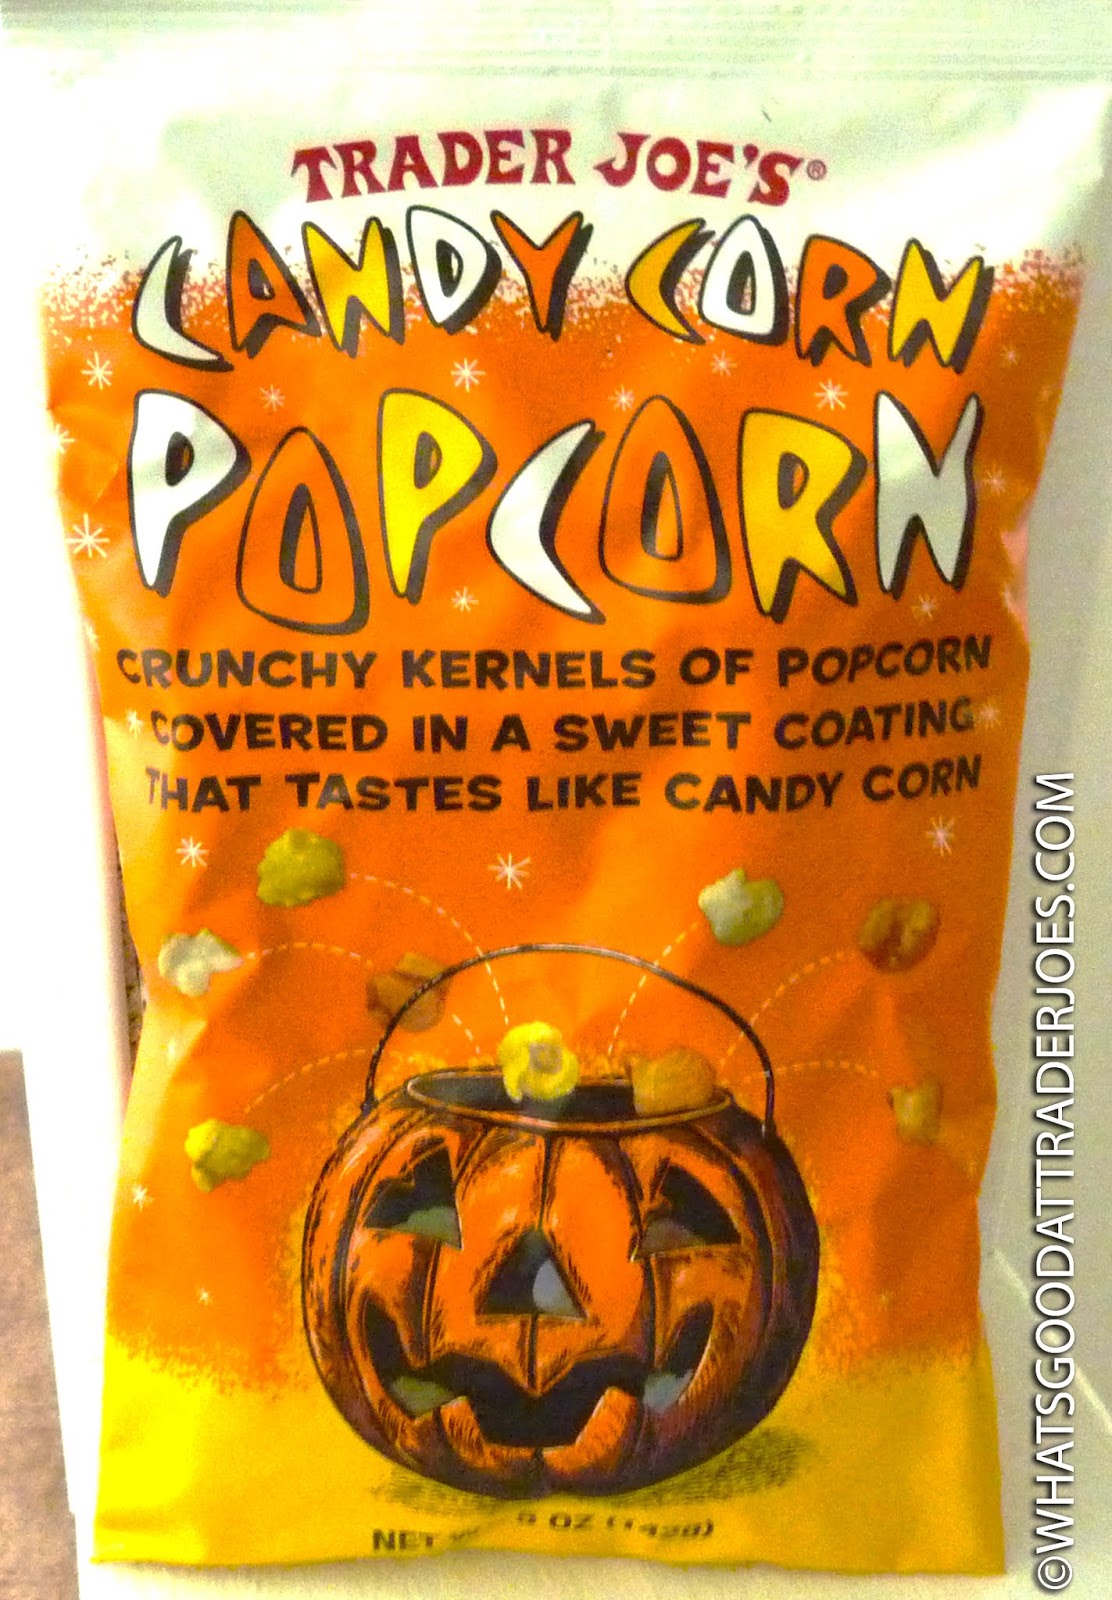 What's Good at Trader Joe's?: Trader Joe's Candy Corn Popcorn